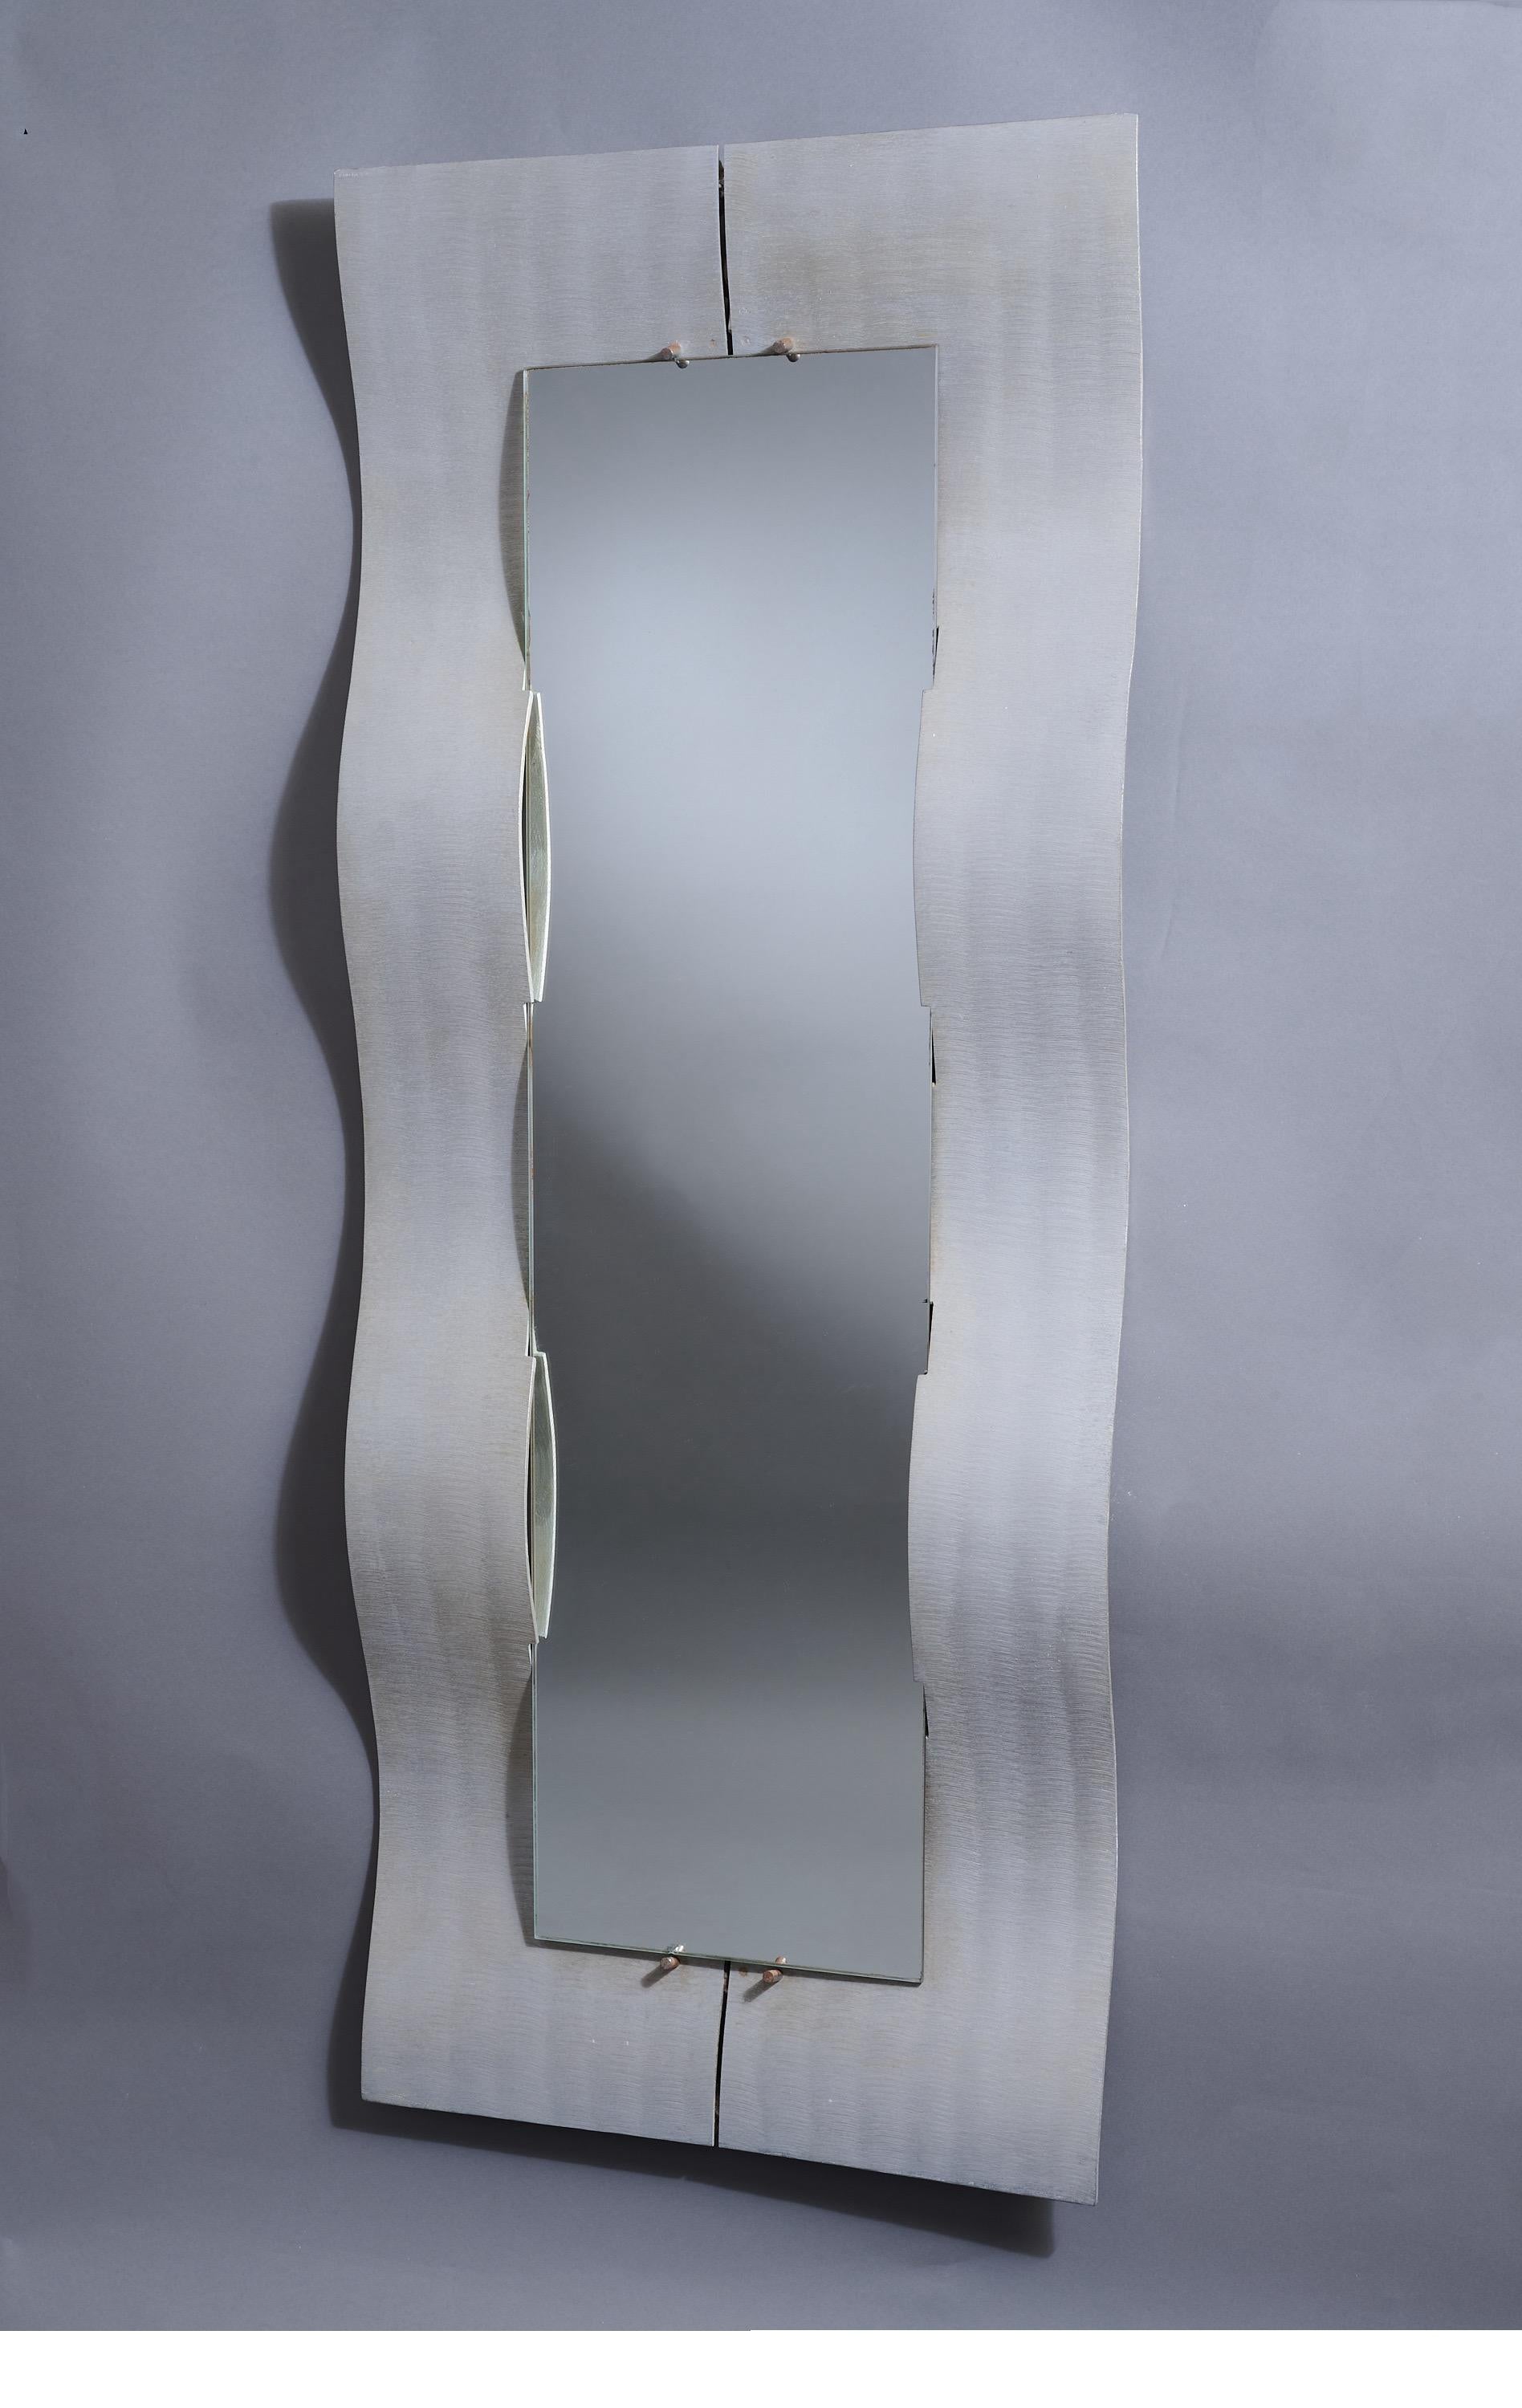 Lorenzo Burchiellaro (n. 1933)

Atractivo espejo de pared modernista de cuerpo entero, obra del escultor italiano Lorenzo Burchiellaro, en aluminio grabado y conformado. Un largo marco rectangular tridimensional compuesto por dos cintas dinámicas,